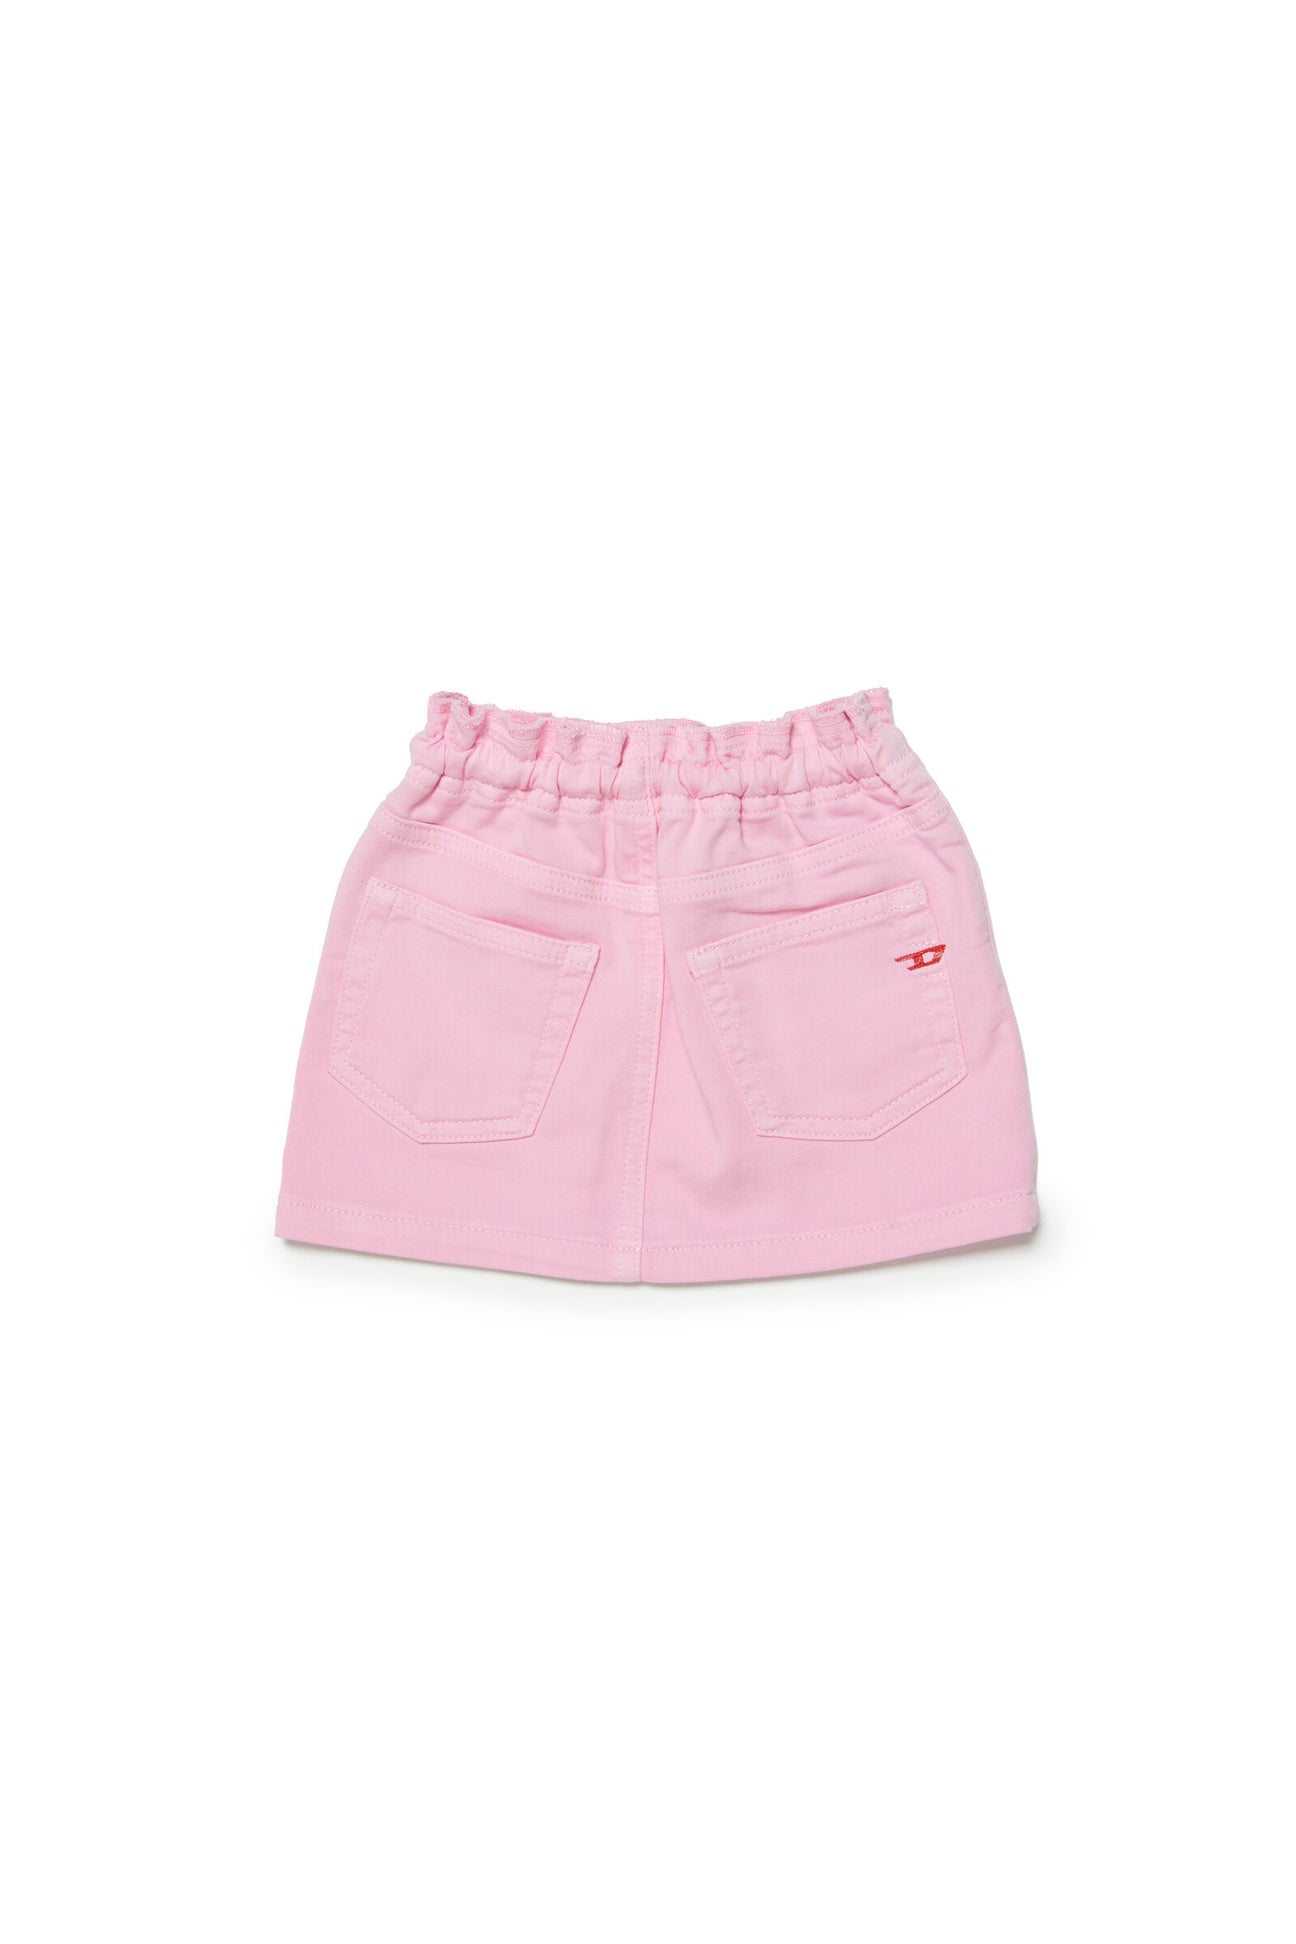 Pastel pink denin skirt with drawstrings Pastel pink denin skirt with drawstrings